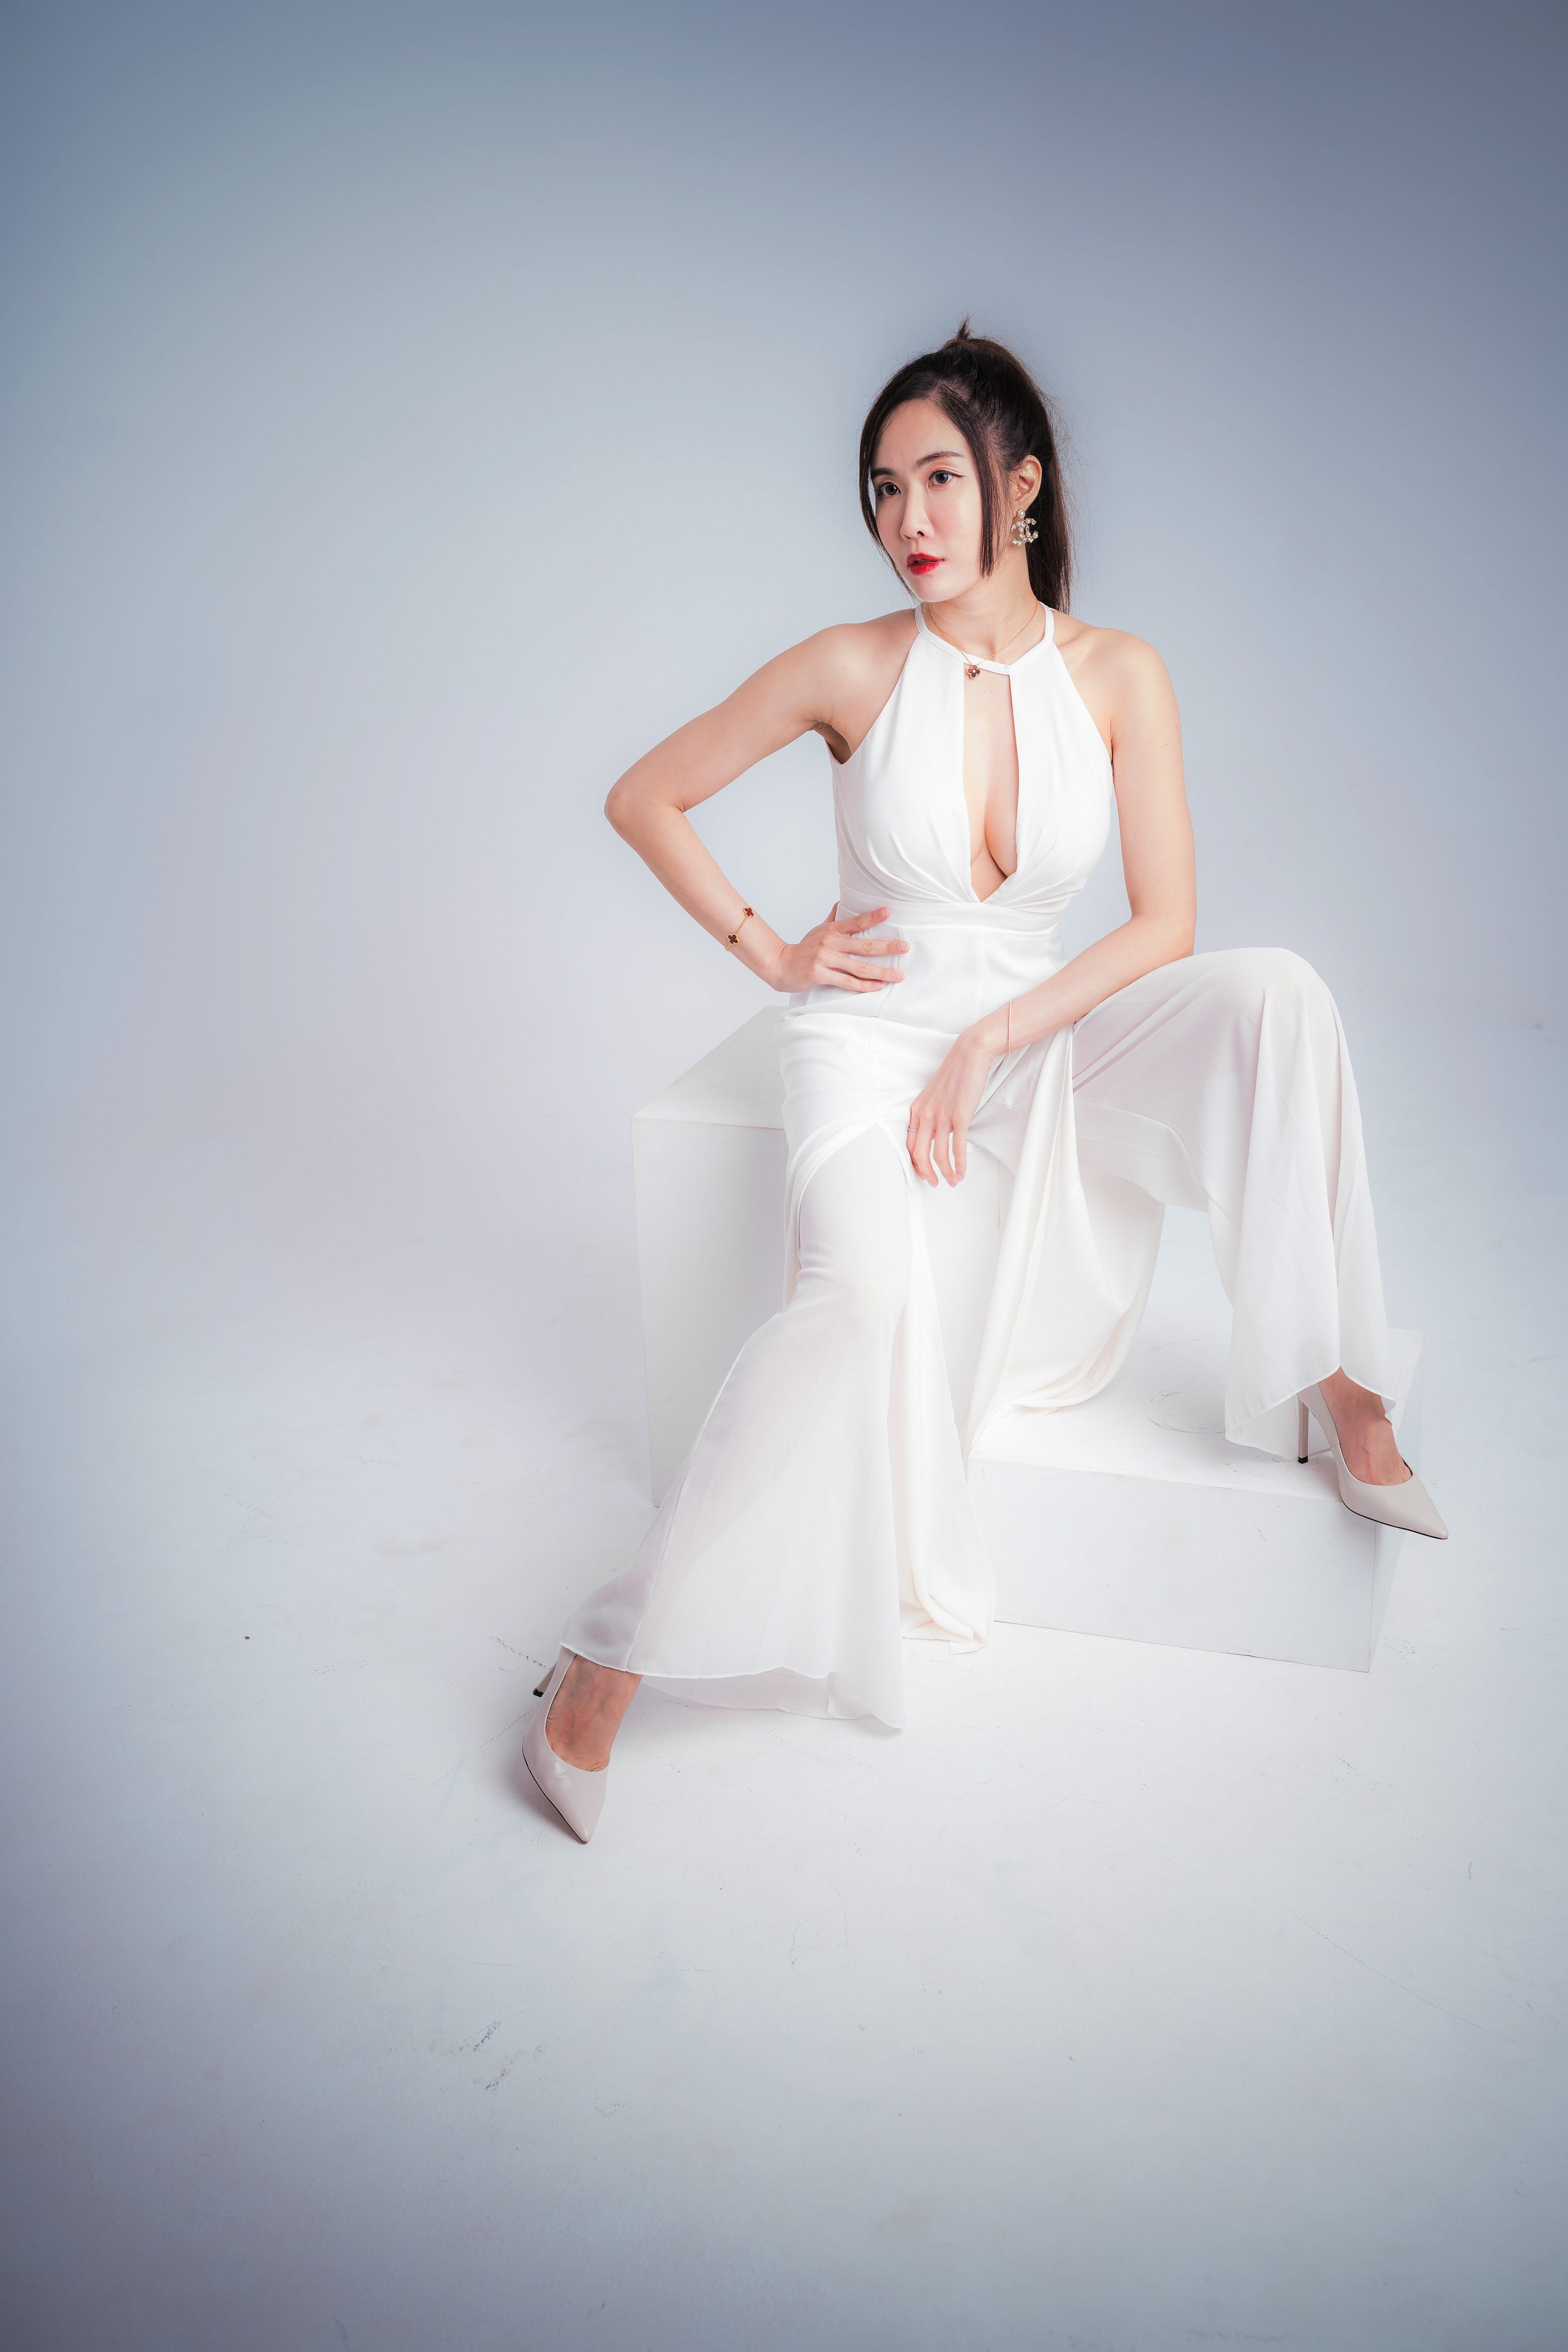 Asian Model Women Long Hair Dark Hair Sitting White Dress White Heels Bracelets Necklace Earring Pon 3000x4500